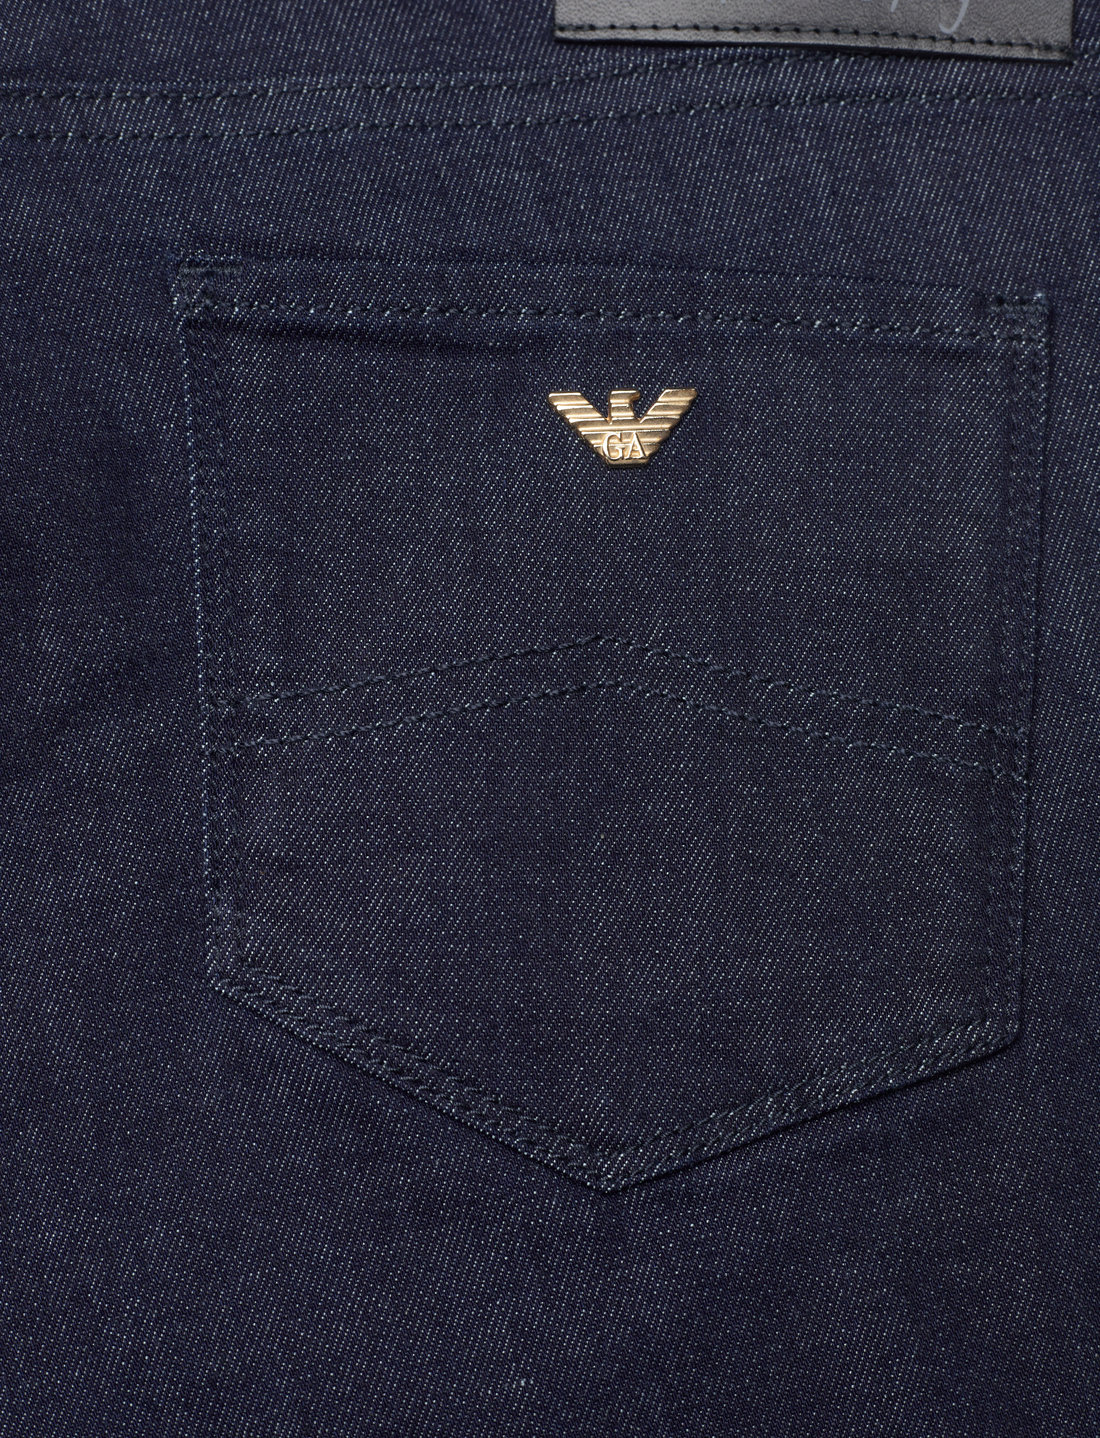 Emporio Armani 5 Tasche - Straight jeans - Boozt.com